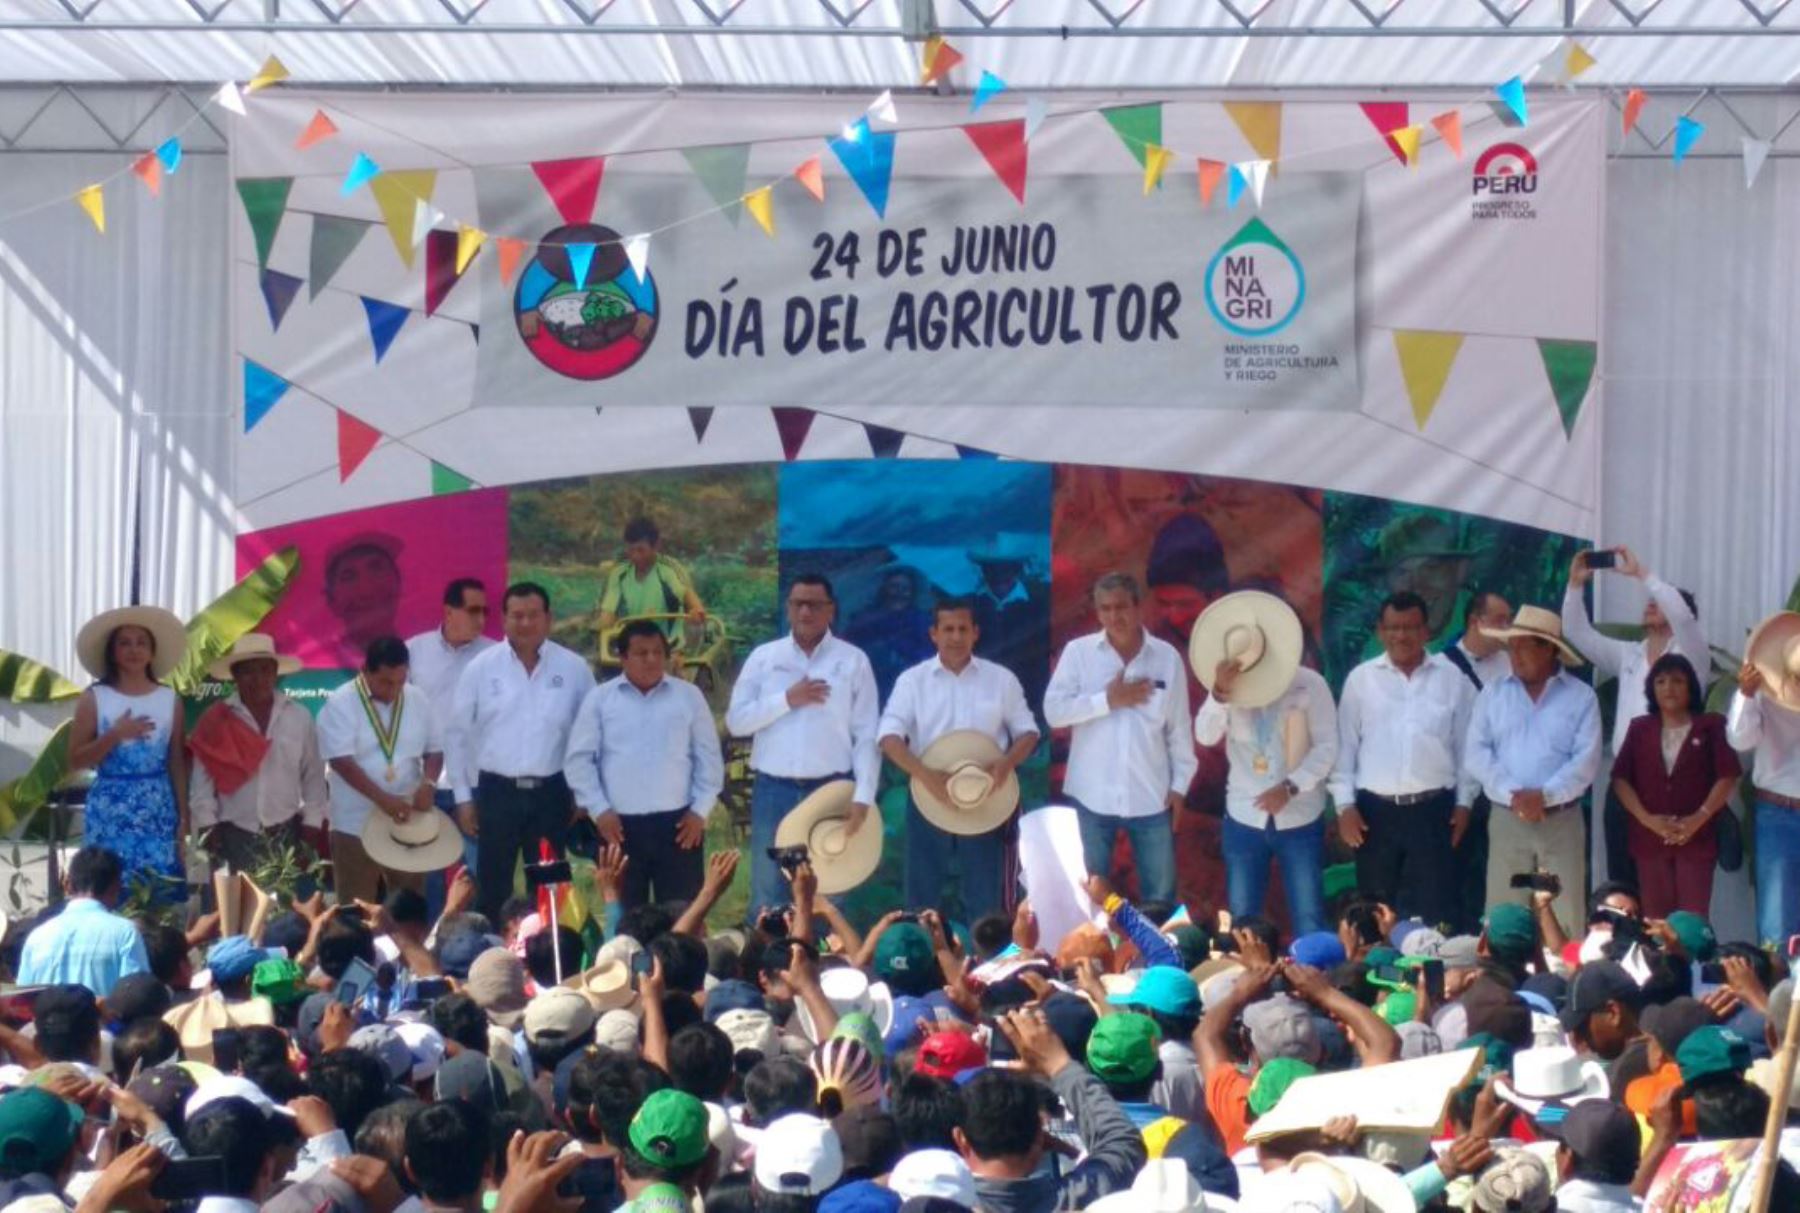 Ceremonia por el Día del Agricultor, realizado en Piura, con la participación del Presidente de la República, Ollanta Humala y diversas autoridades regionales y locales. Foto: Minagri.